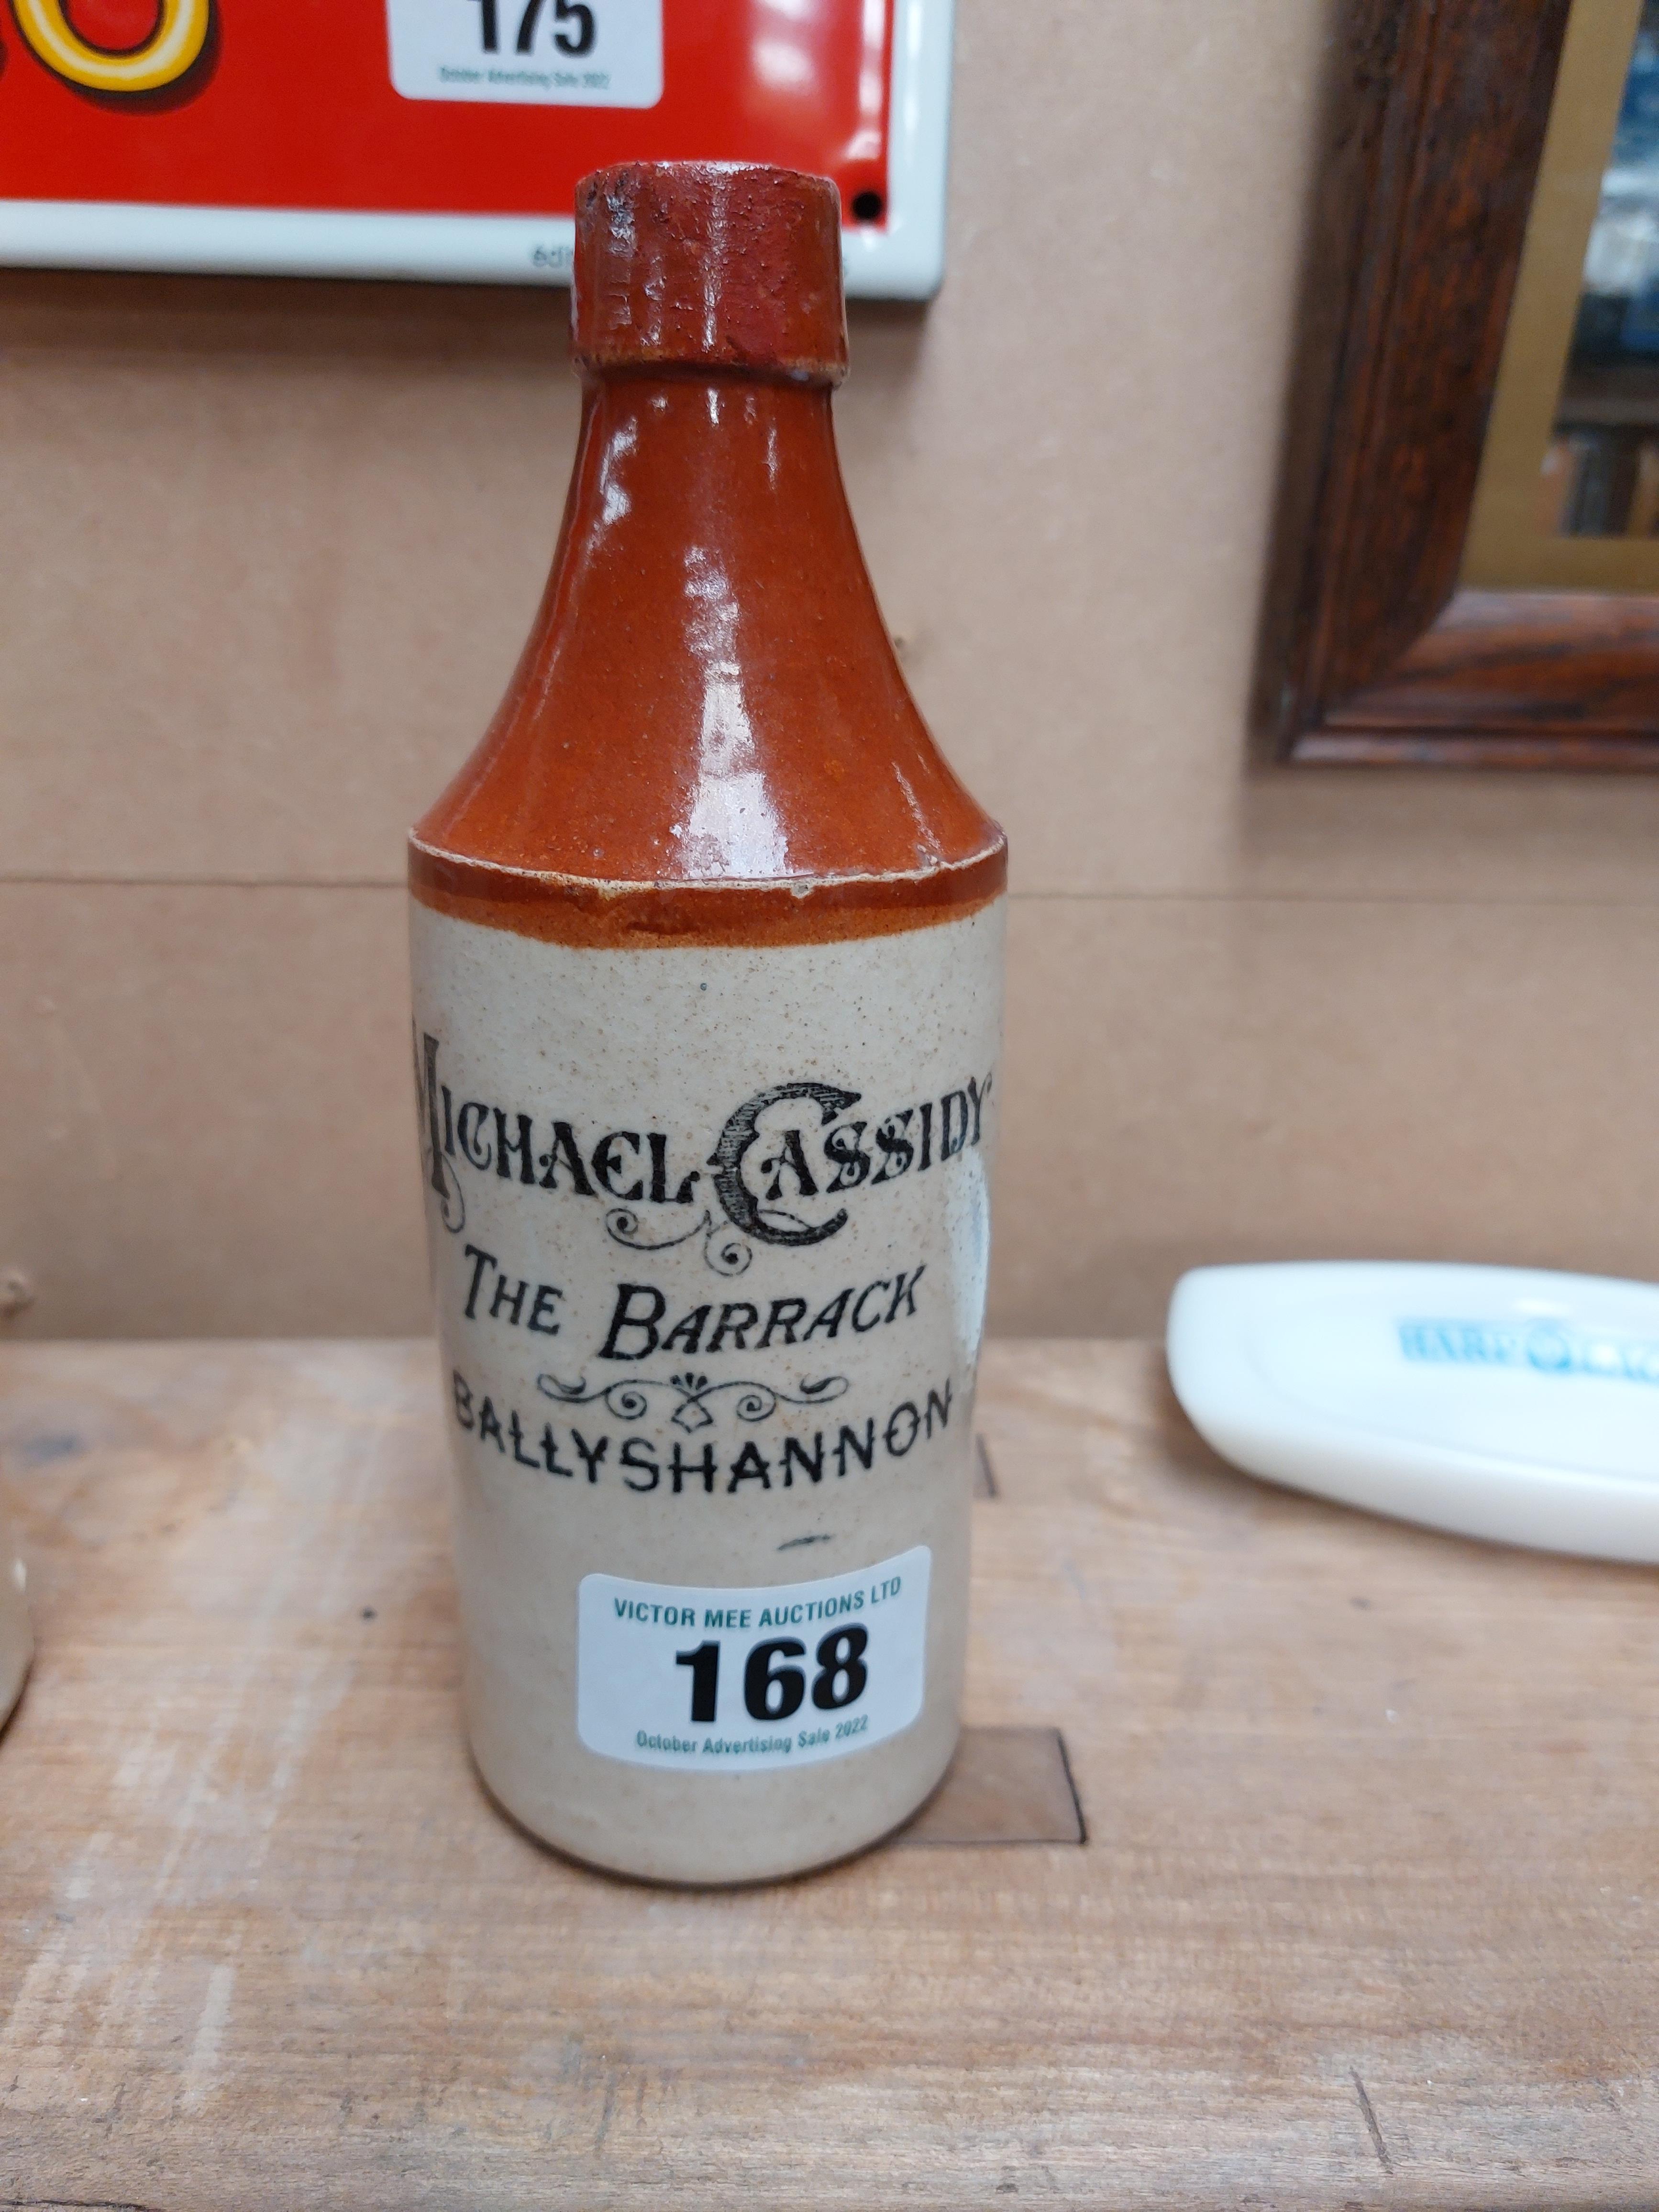 Michael Cassidy The Barrick Ballyshannon stoneware Ginger beer bottle. {20 cm H x 7 cm Dia